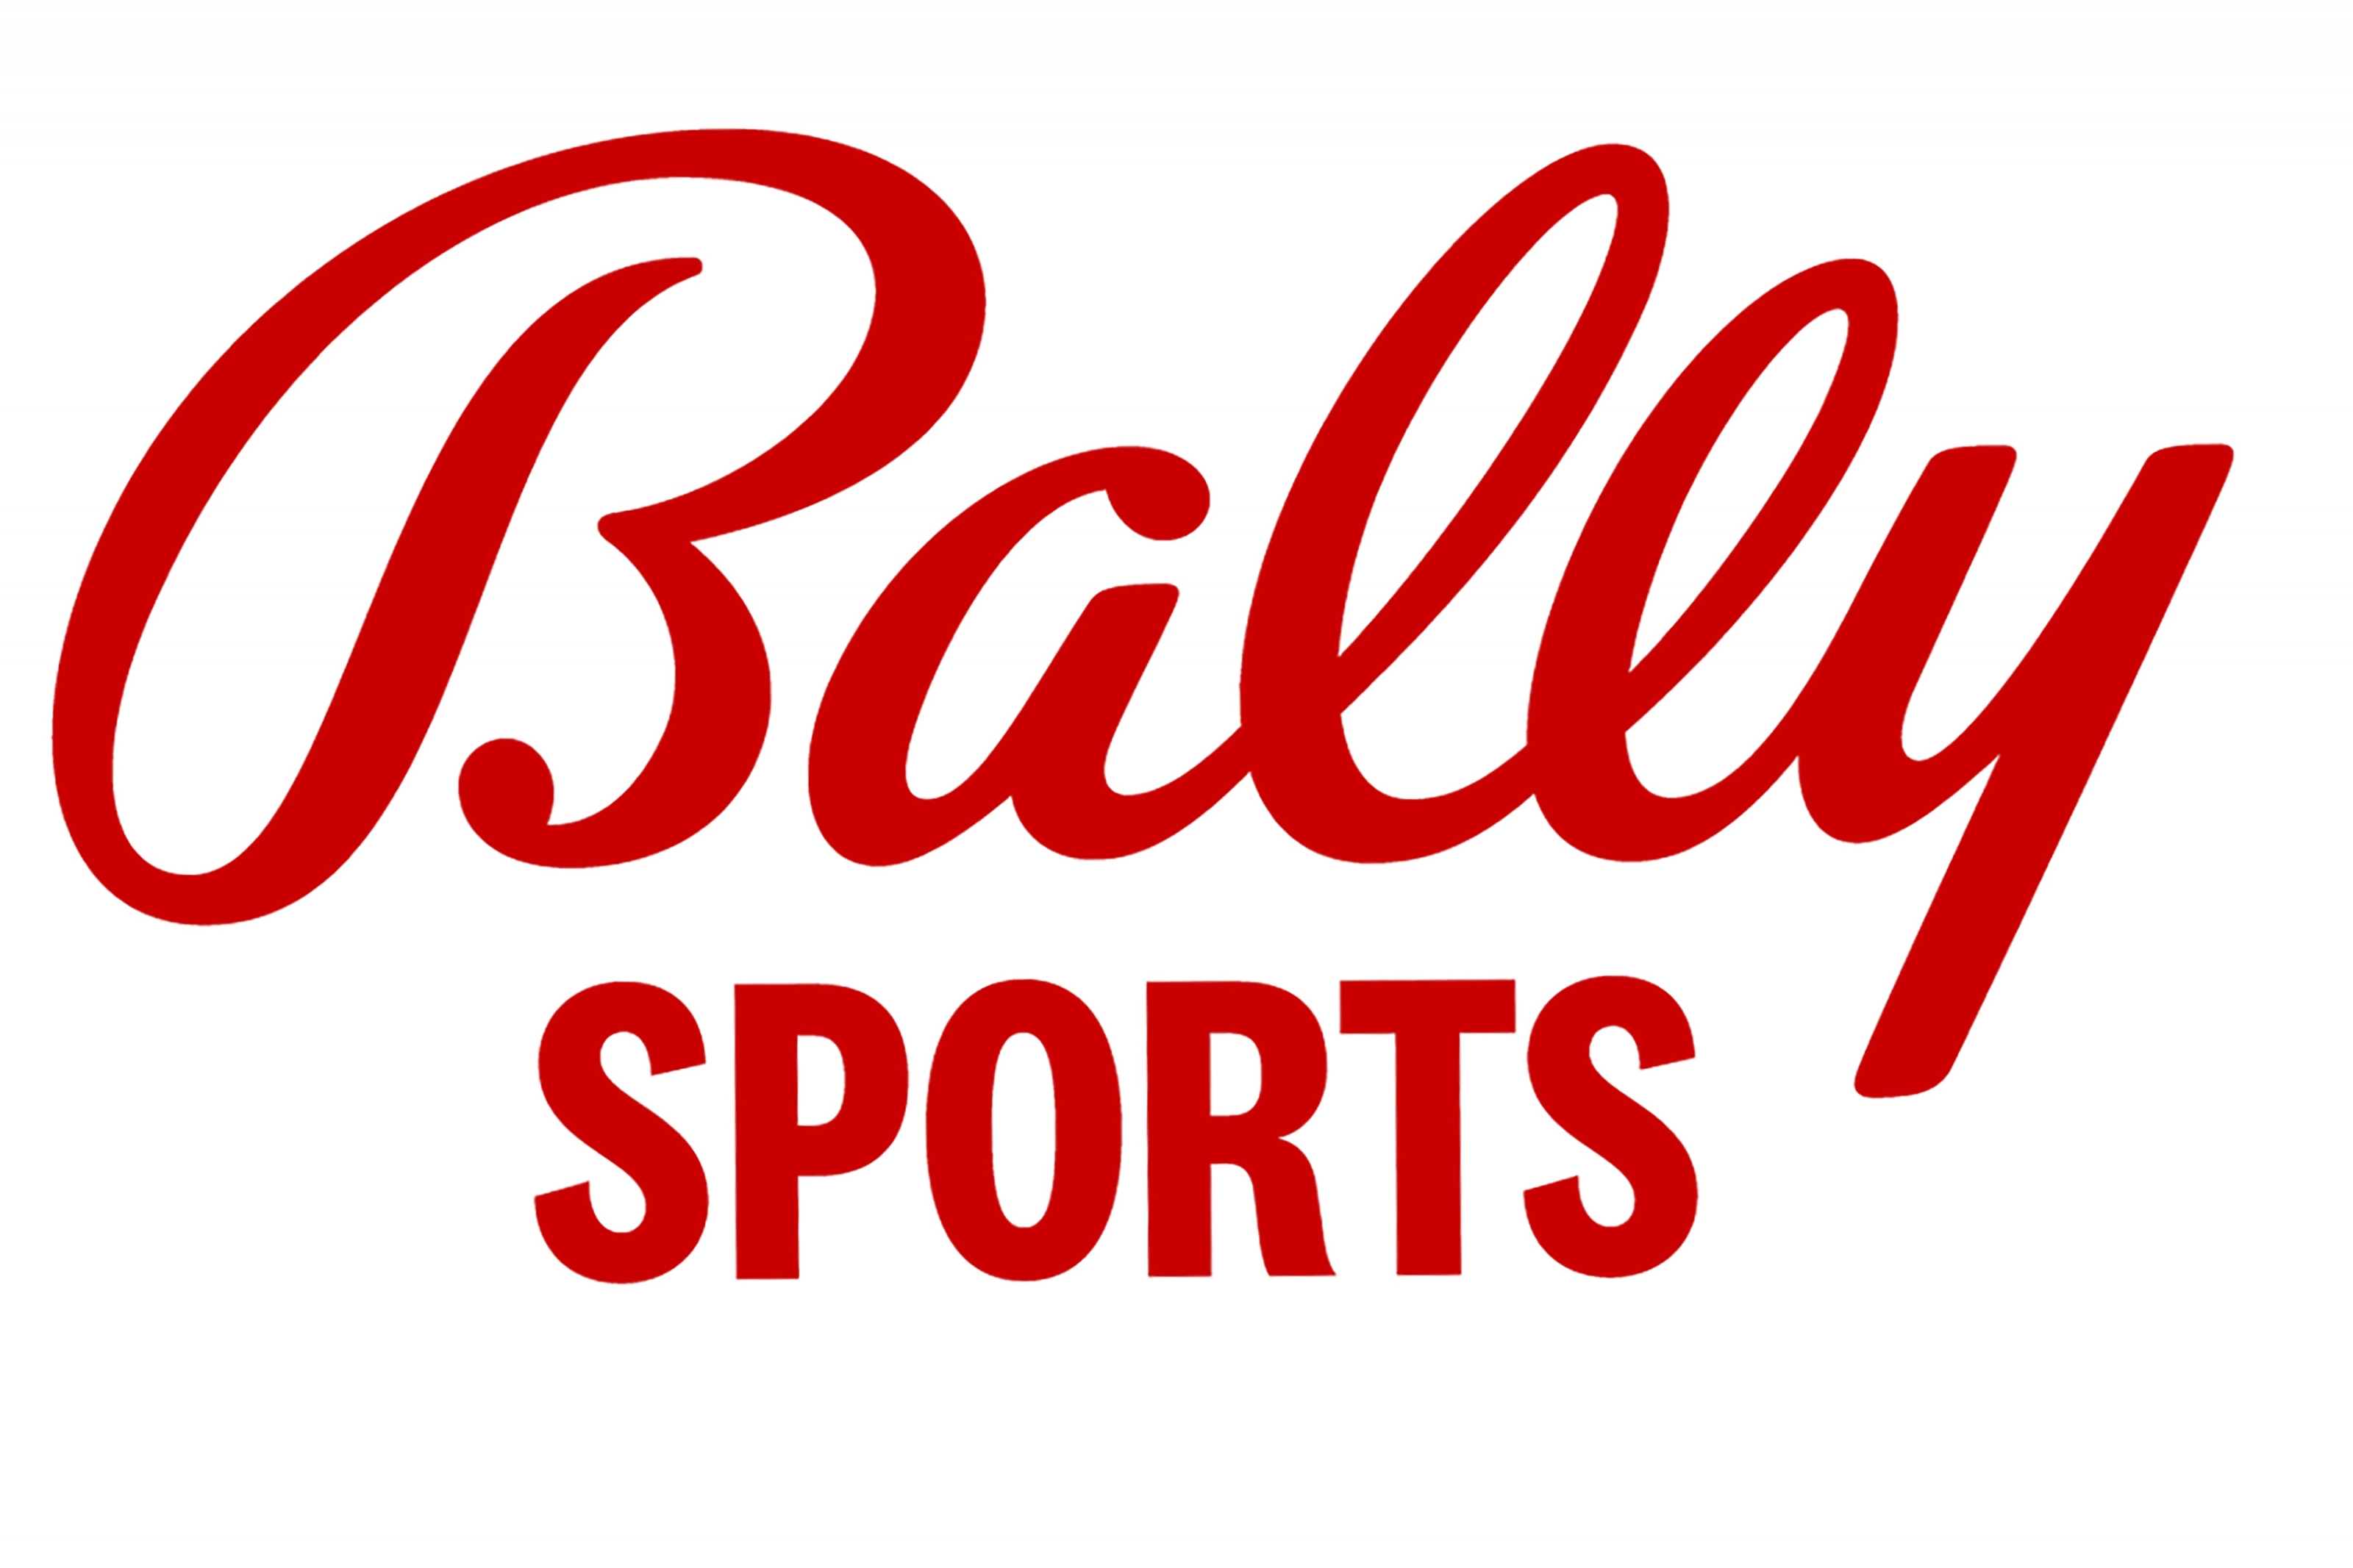 Former Fox regional networks begin new era as Bally Sports